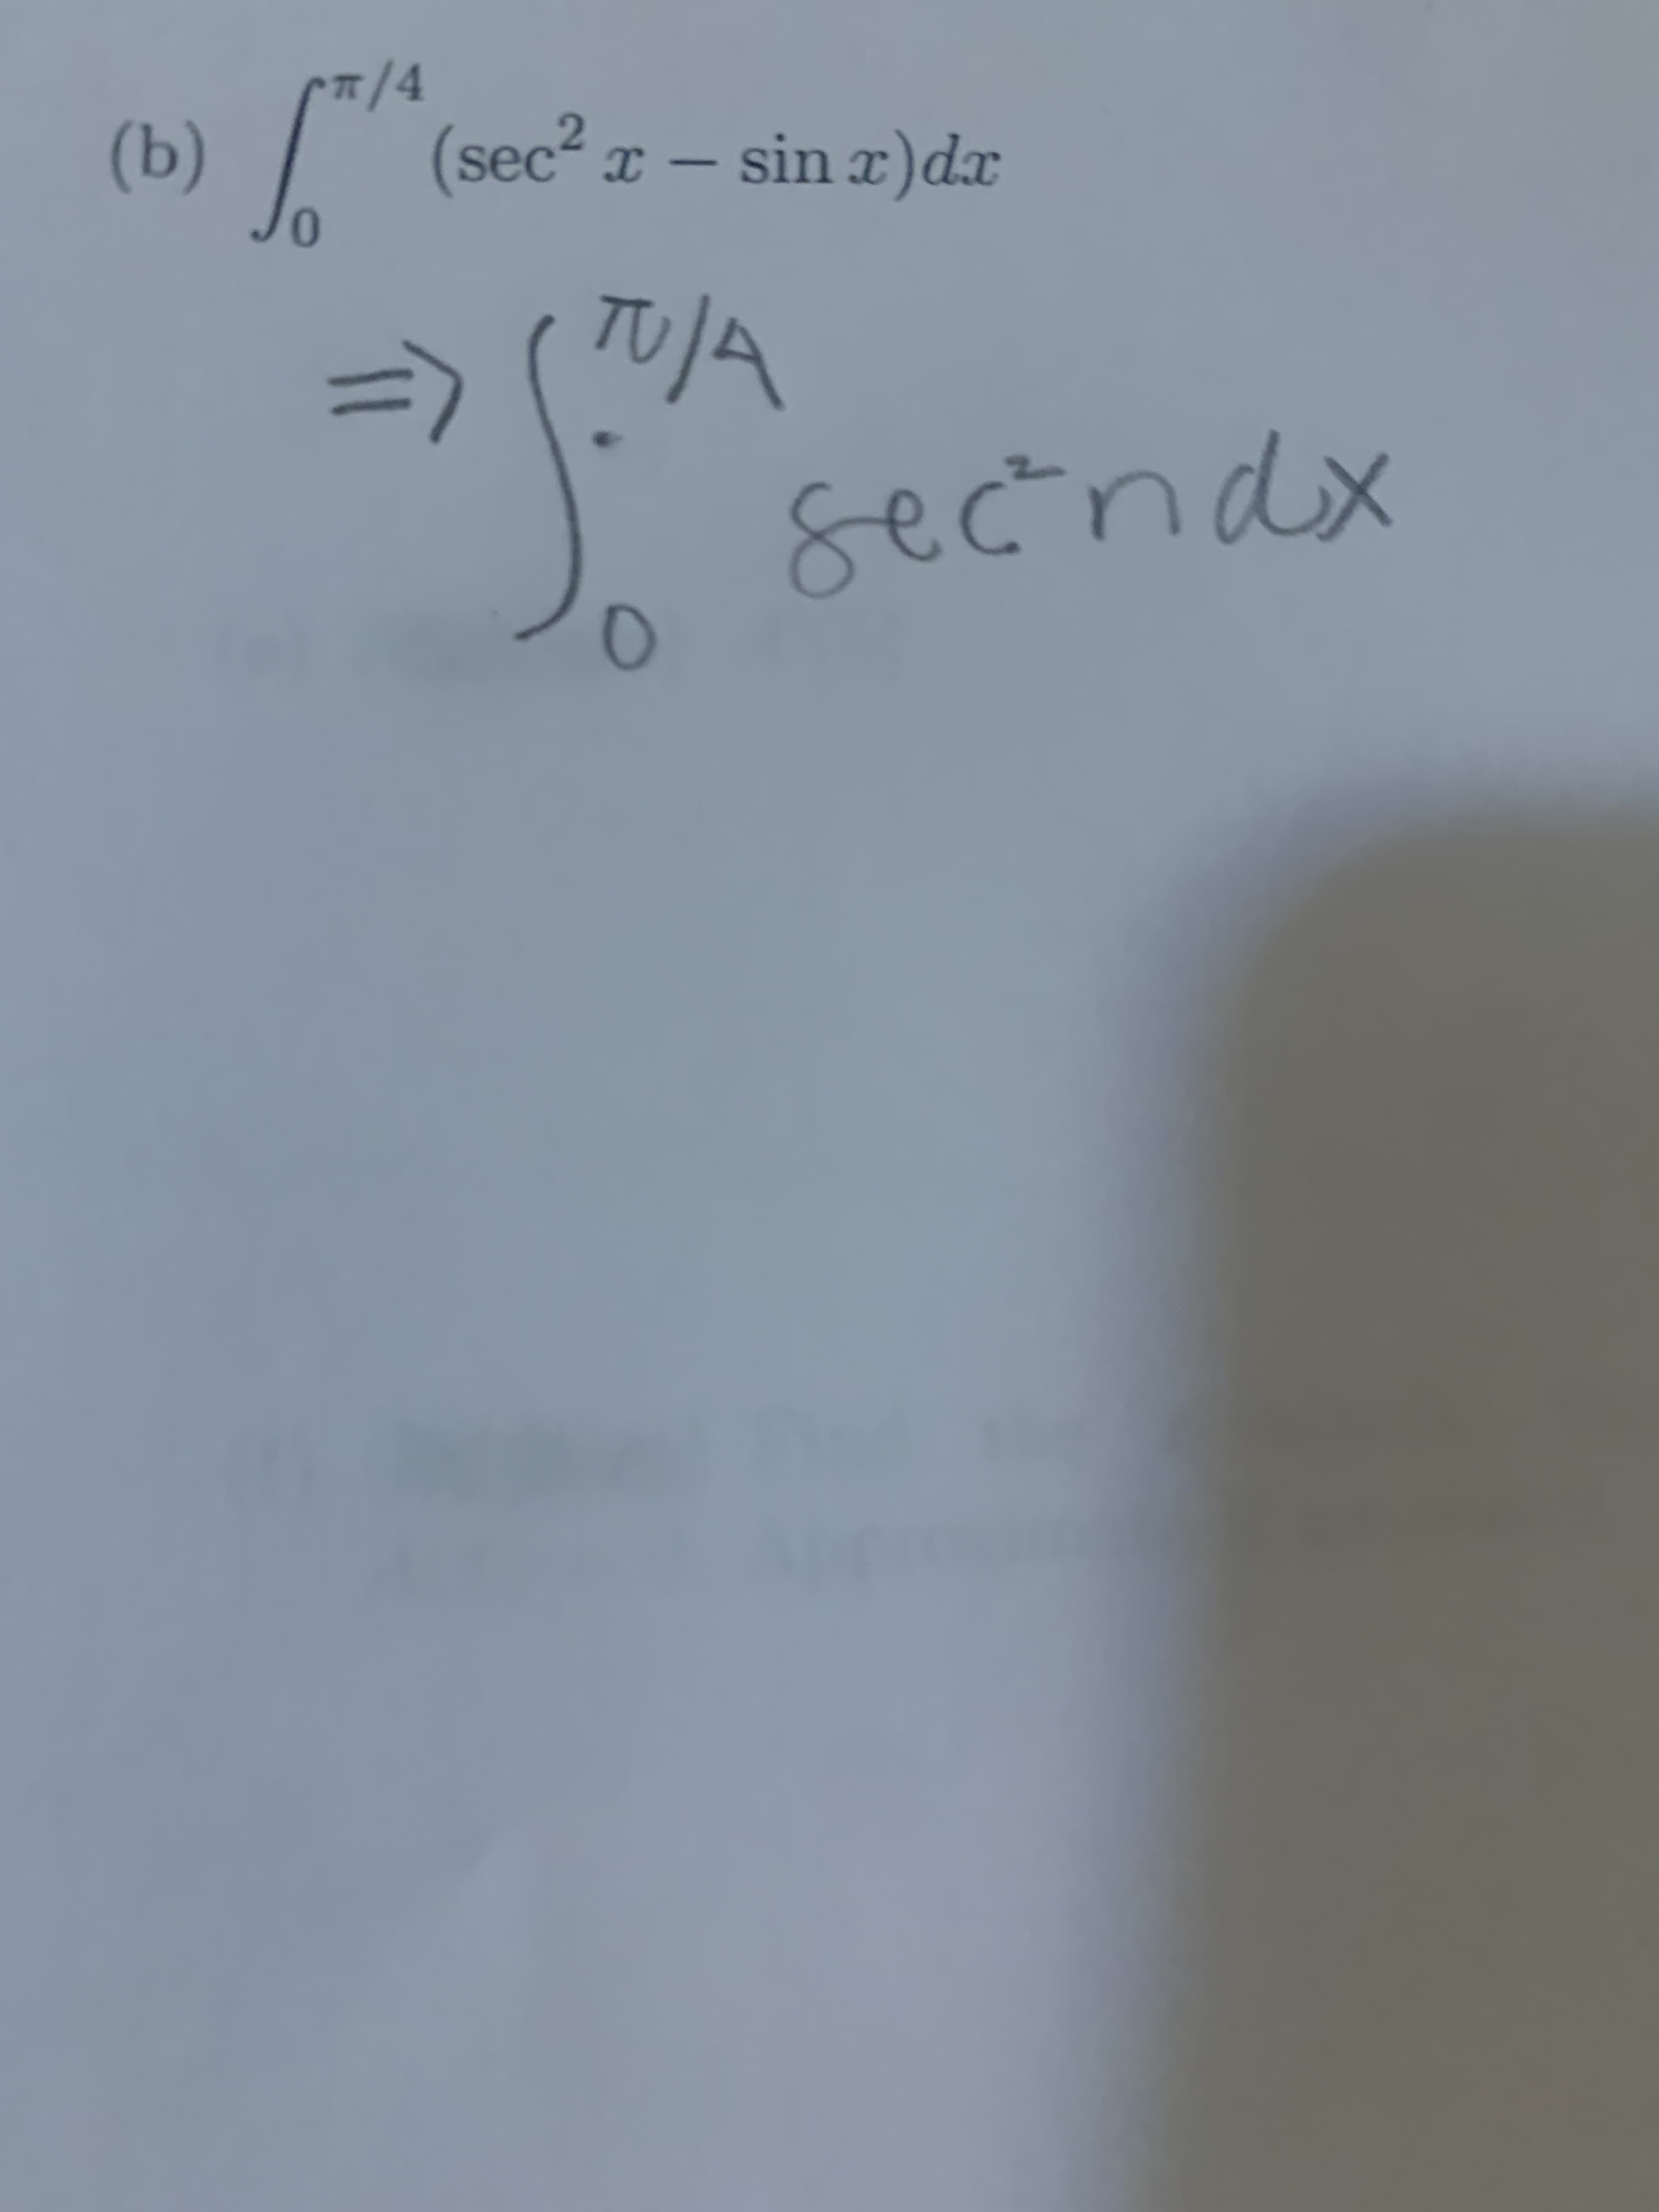 7/4
(sec² x – sin x)dx
